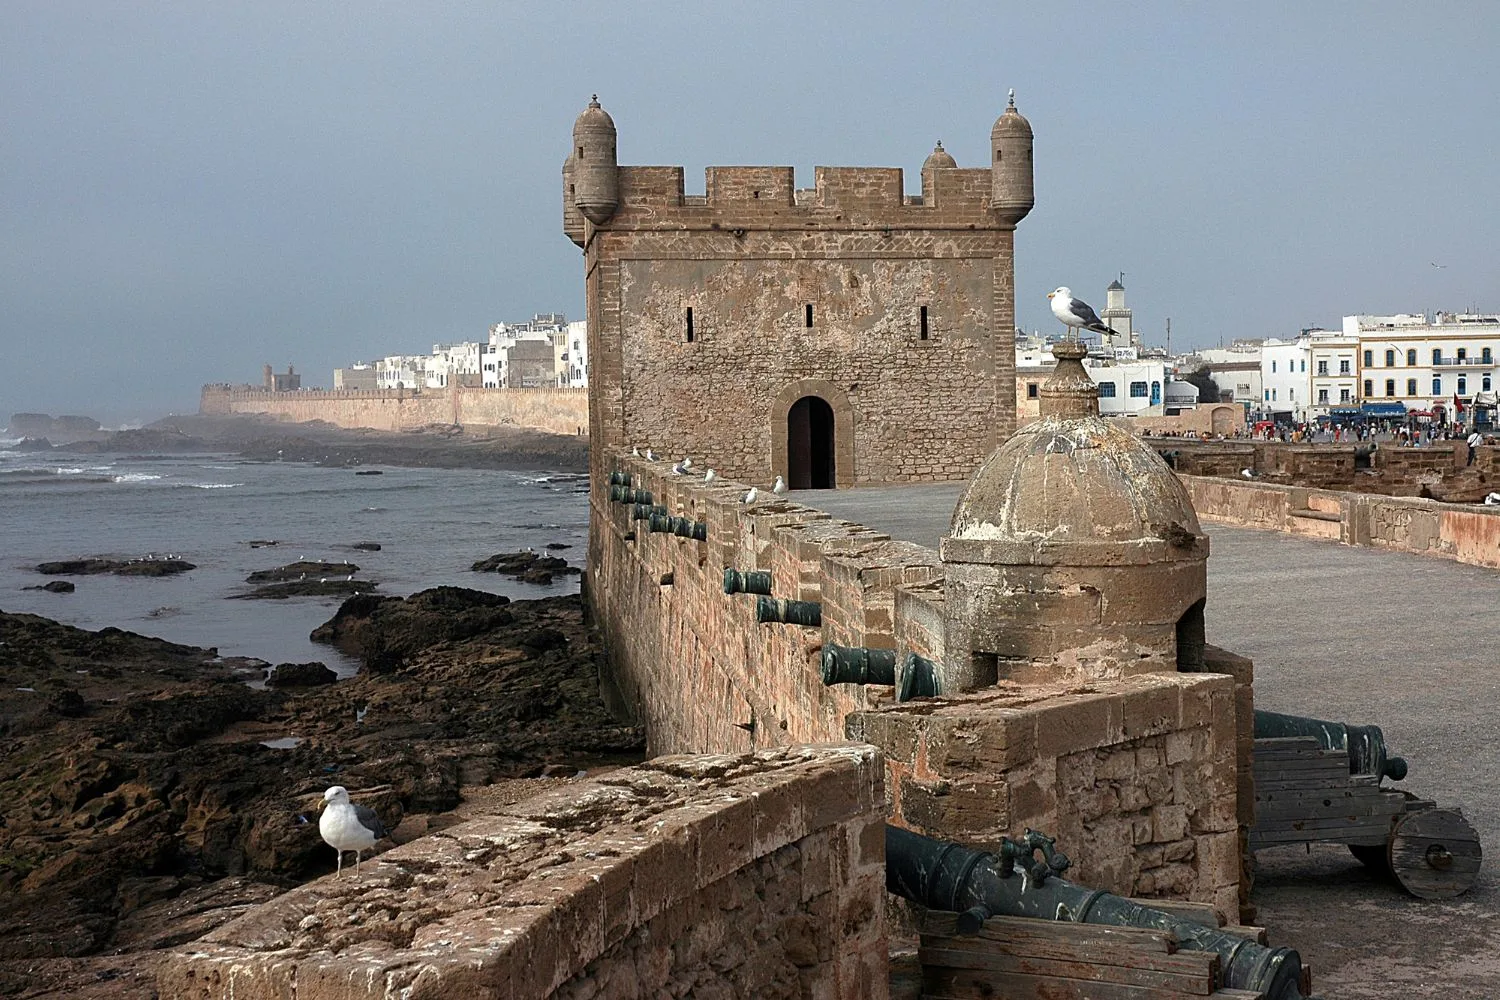 Old Portuguese architecture in Essaouira (Mogador) in Morocco